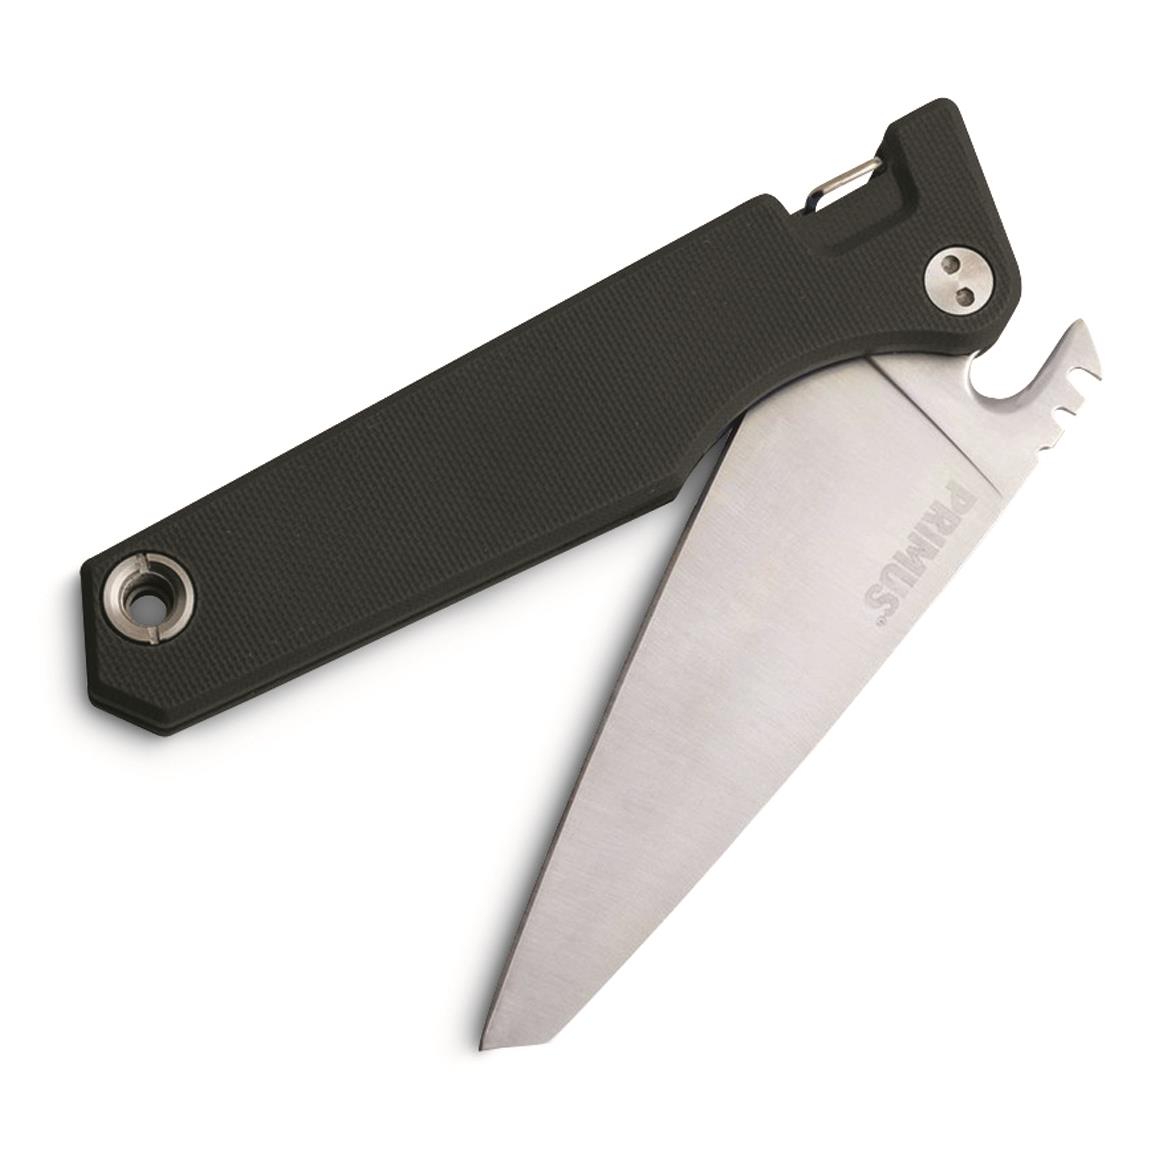 Fieldchef Pocket Knife - Black, Black